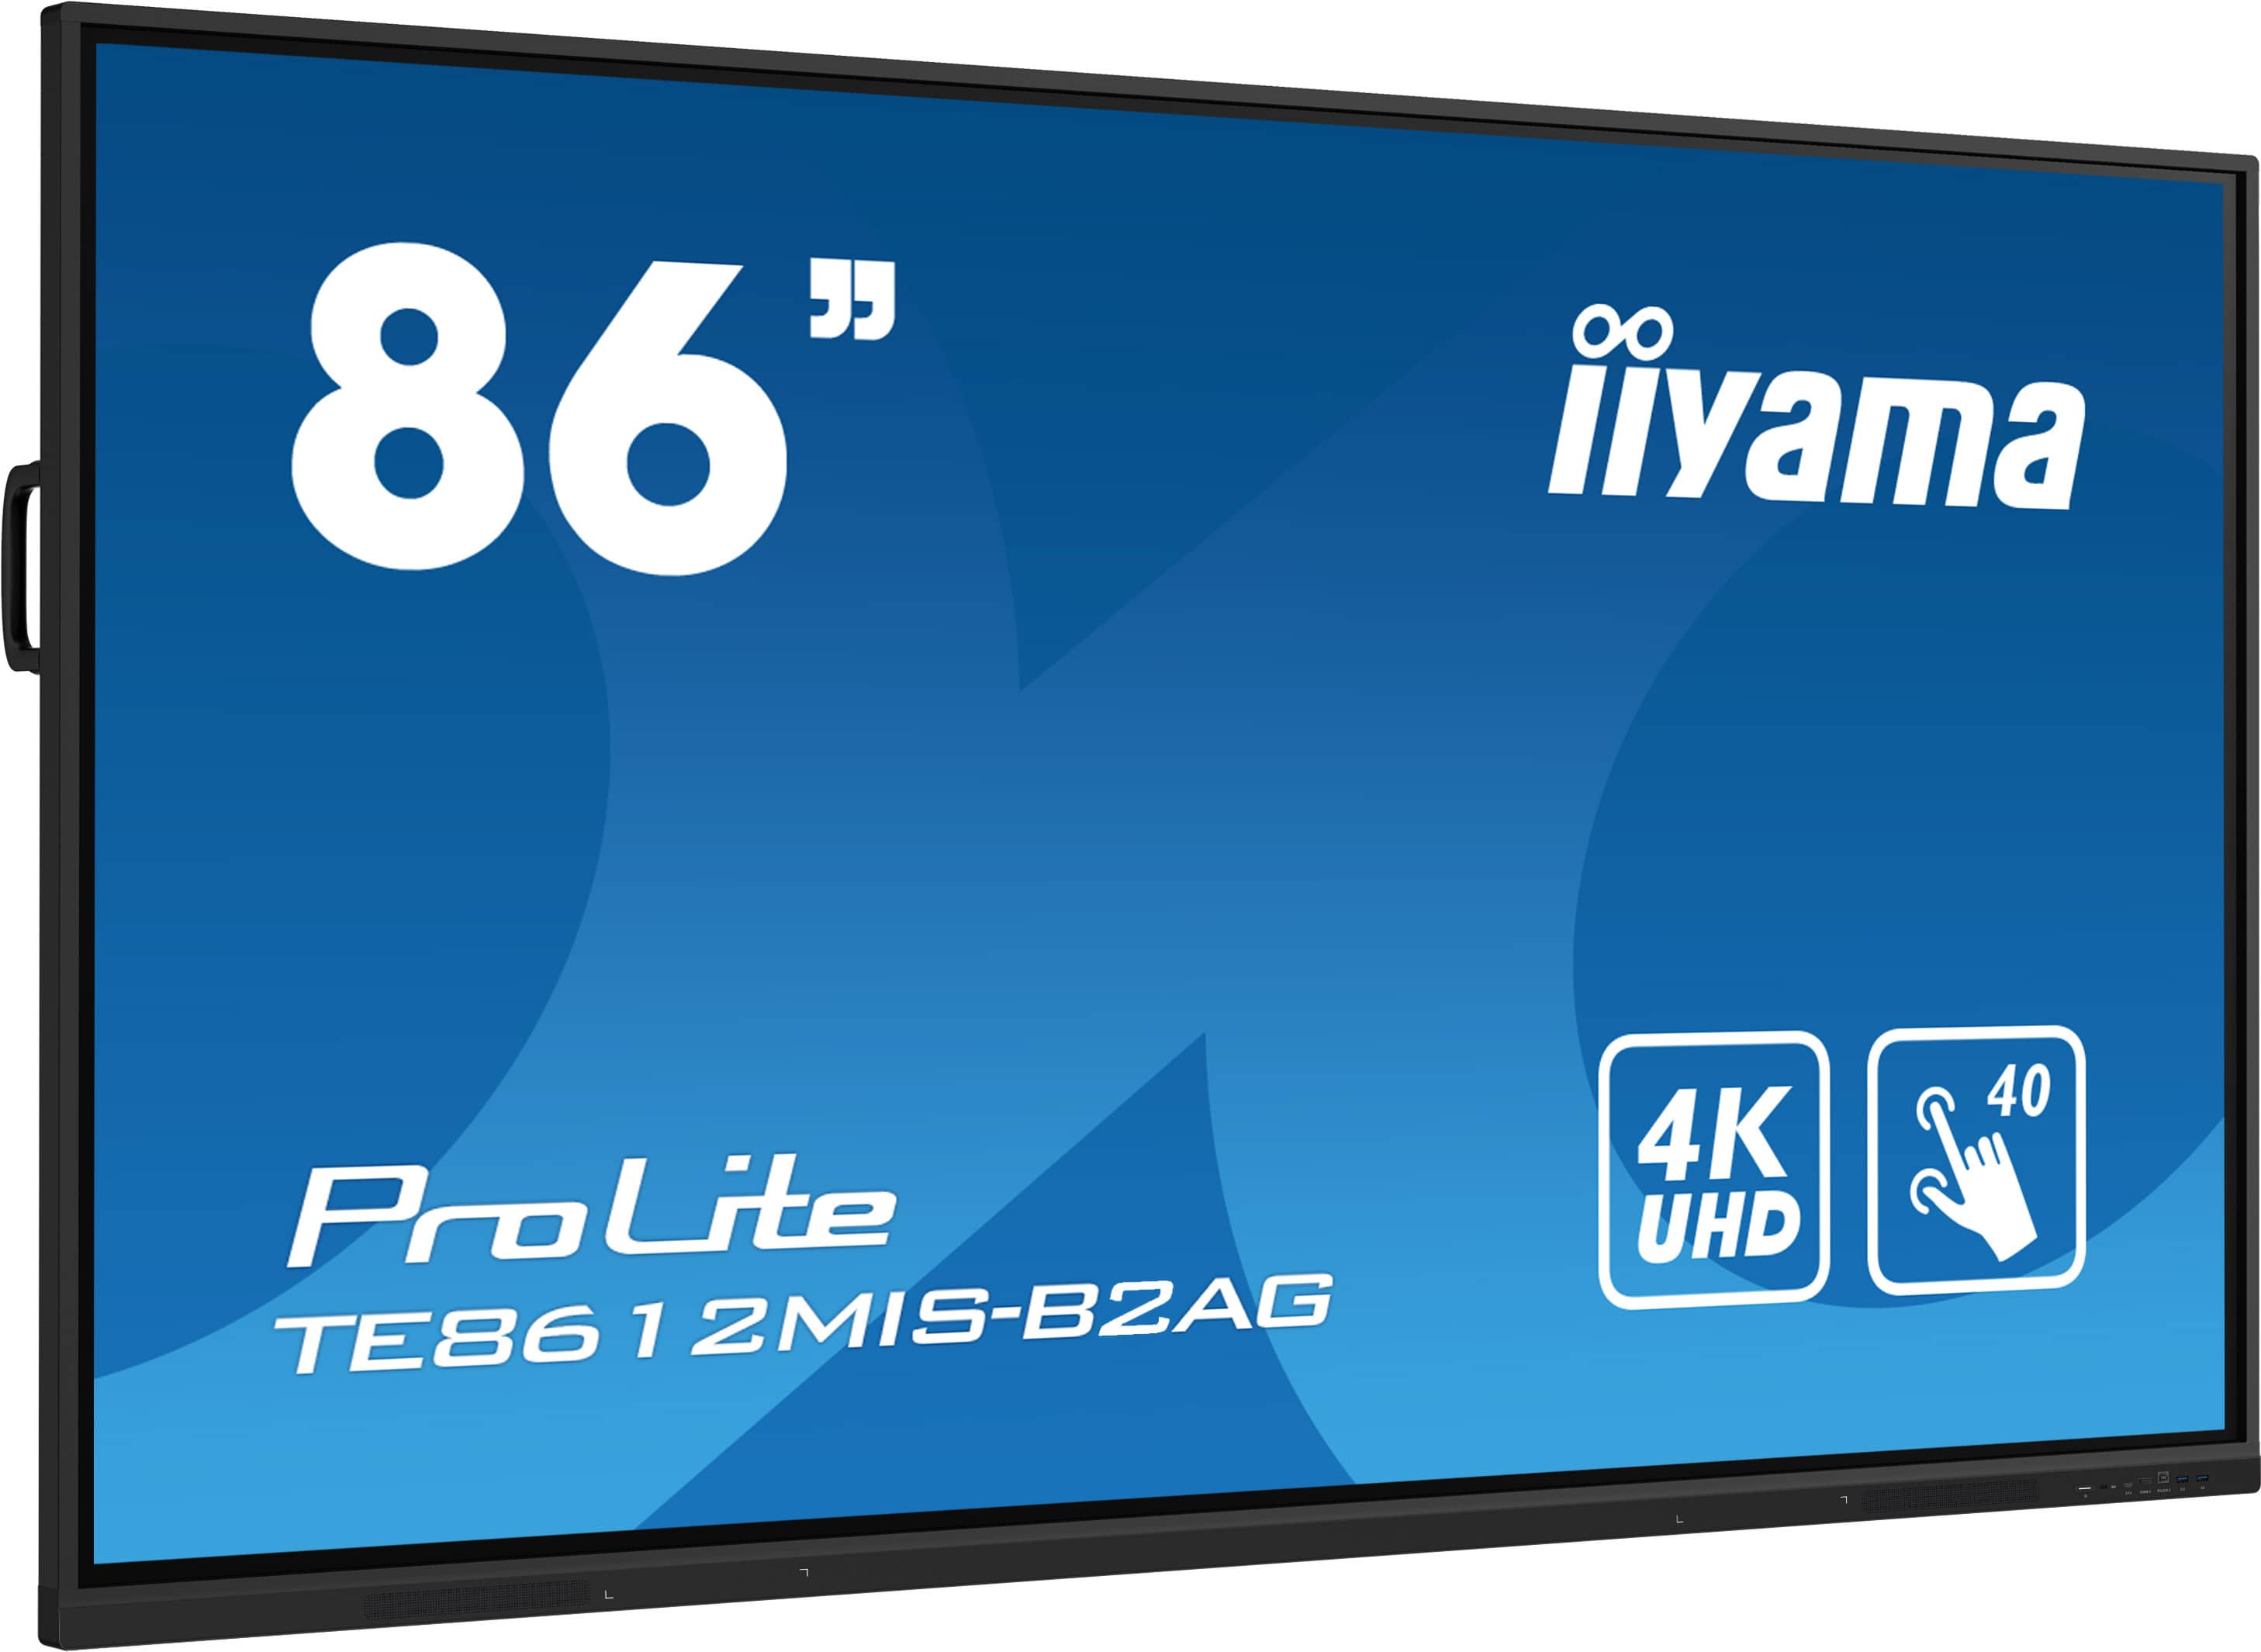 Iiyama ProLite TE8612MIS-B2AG | Interaktives 86" LCD Touchscreen-Display mit 4K-Auflösung, integrierter Whiteboard-Software und Benutzerprofilen